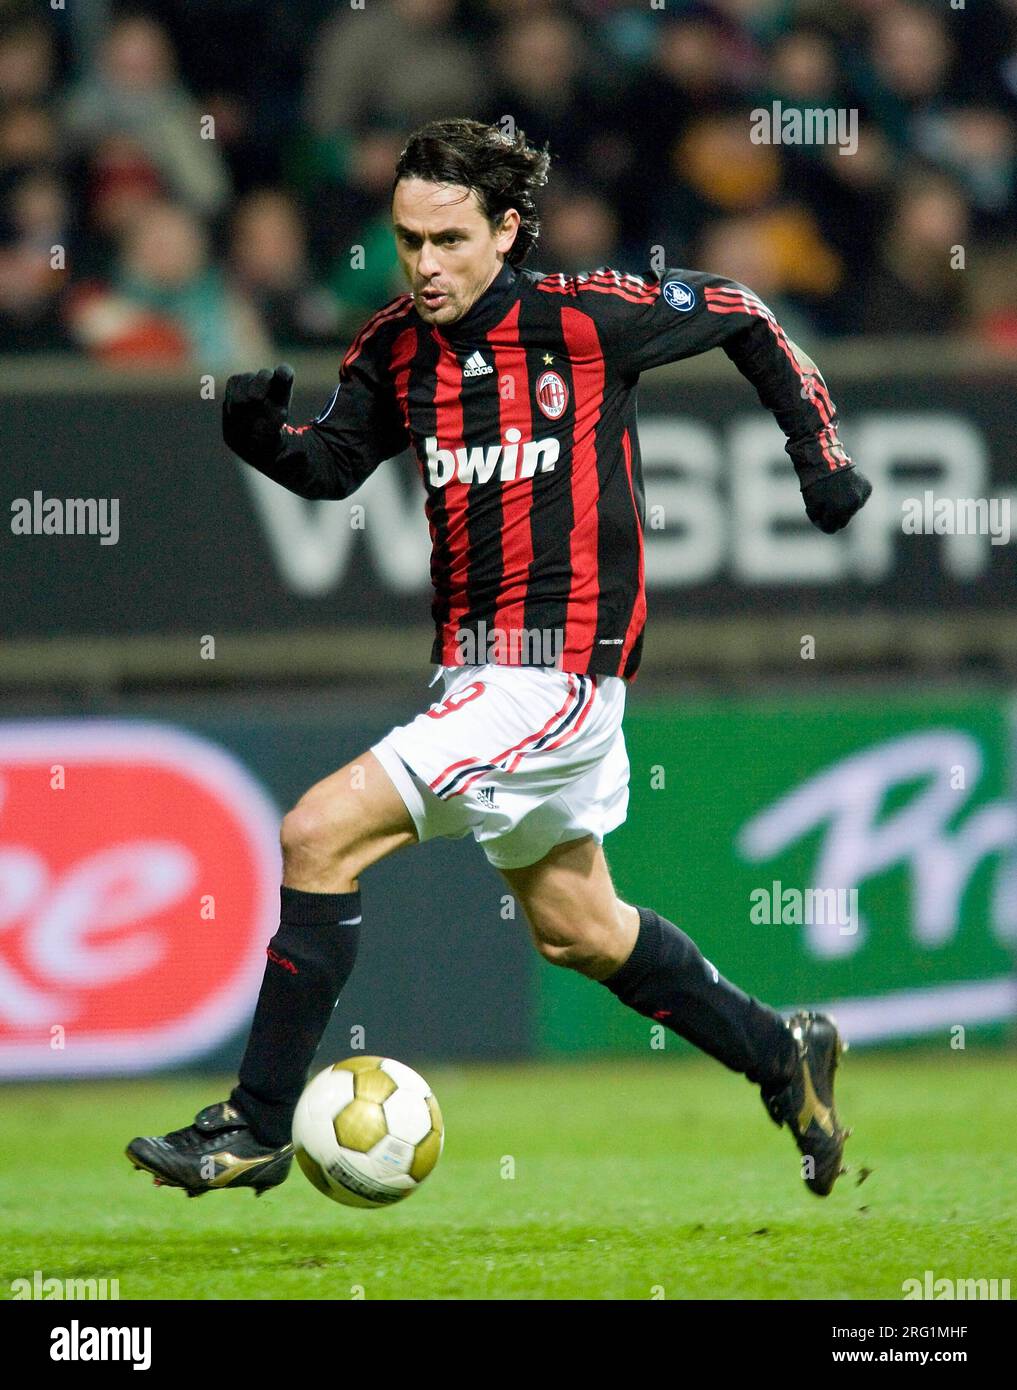 Vintage 9 Filippo Inzaghi Jersey 2006 2007 AC Milan Jersey 